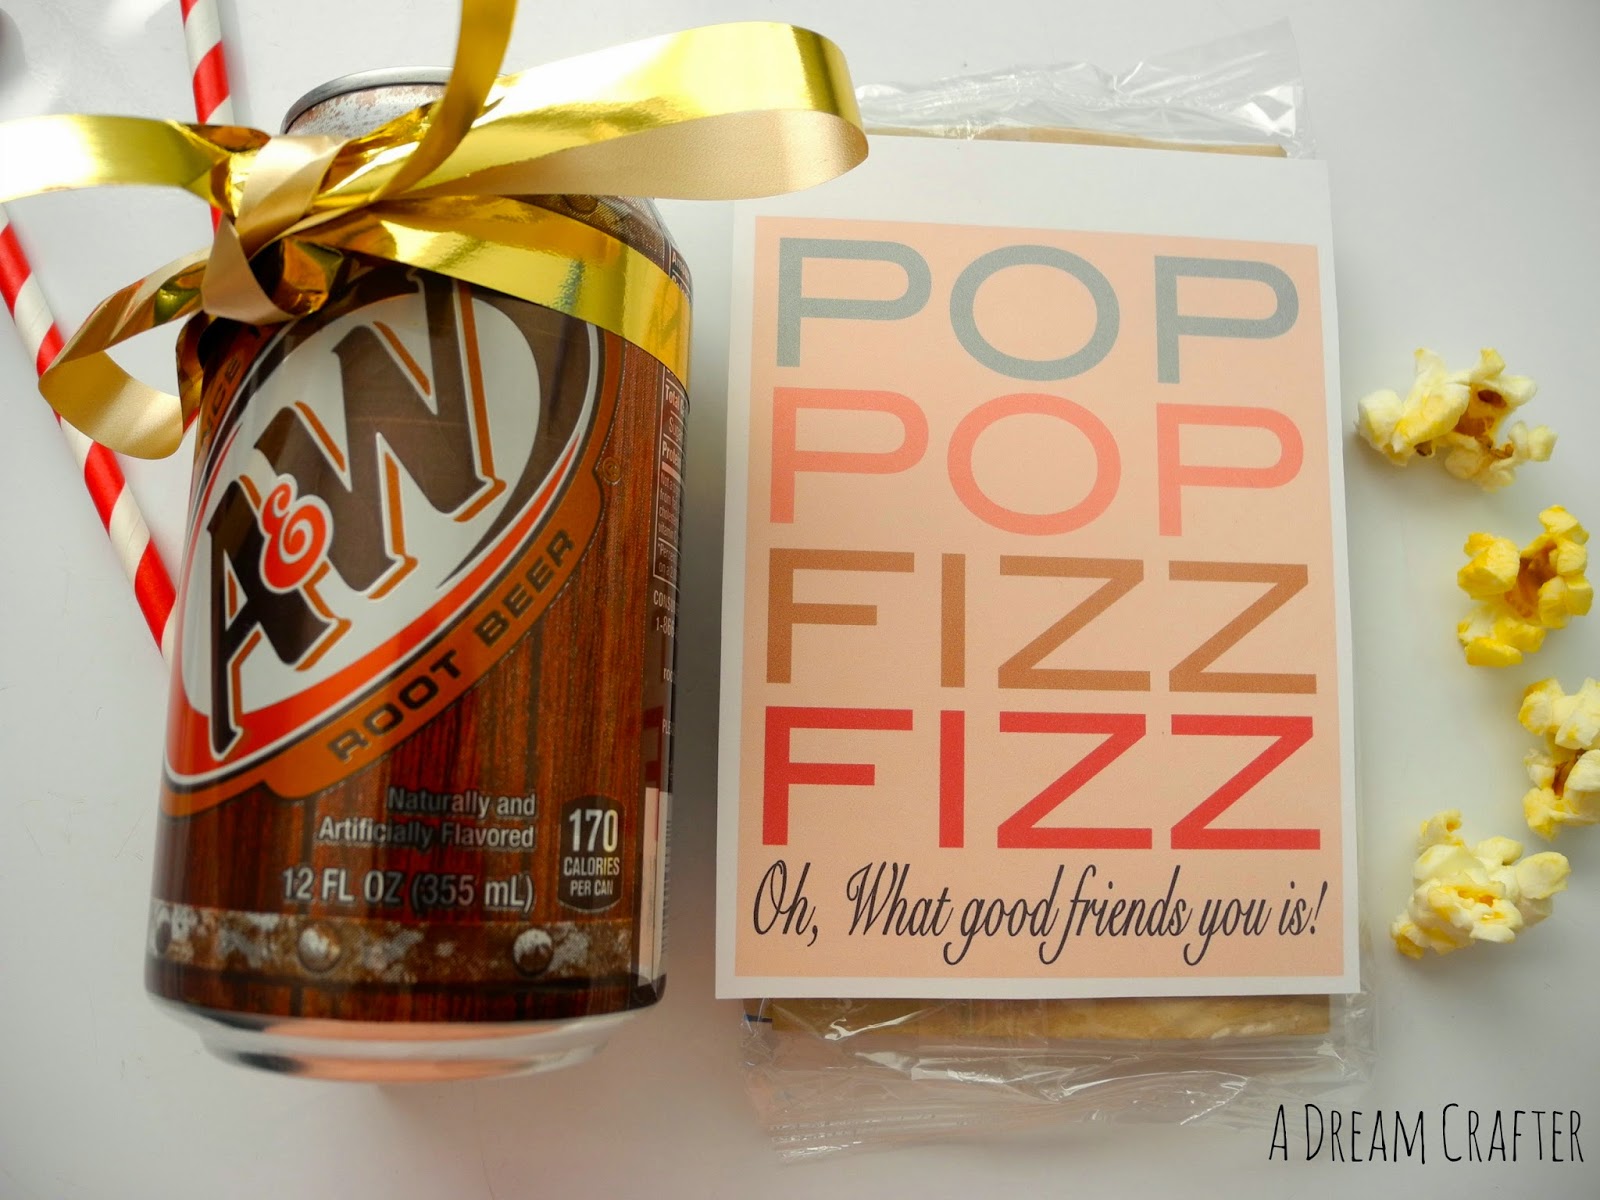 pop-pop-fizz-fizz-neighbor-gift-idea